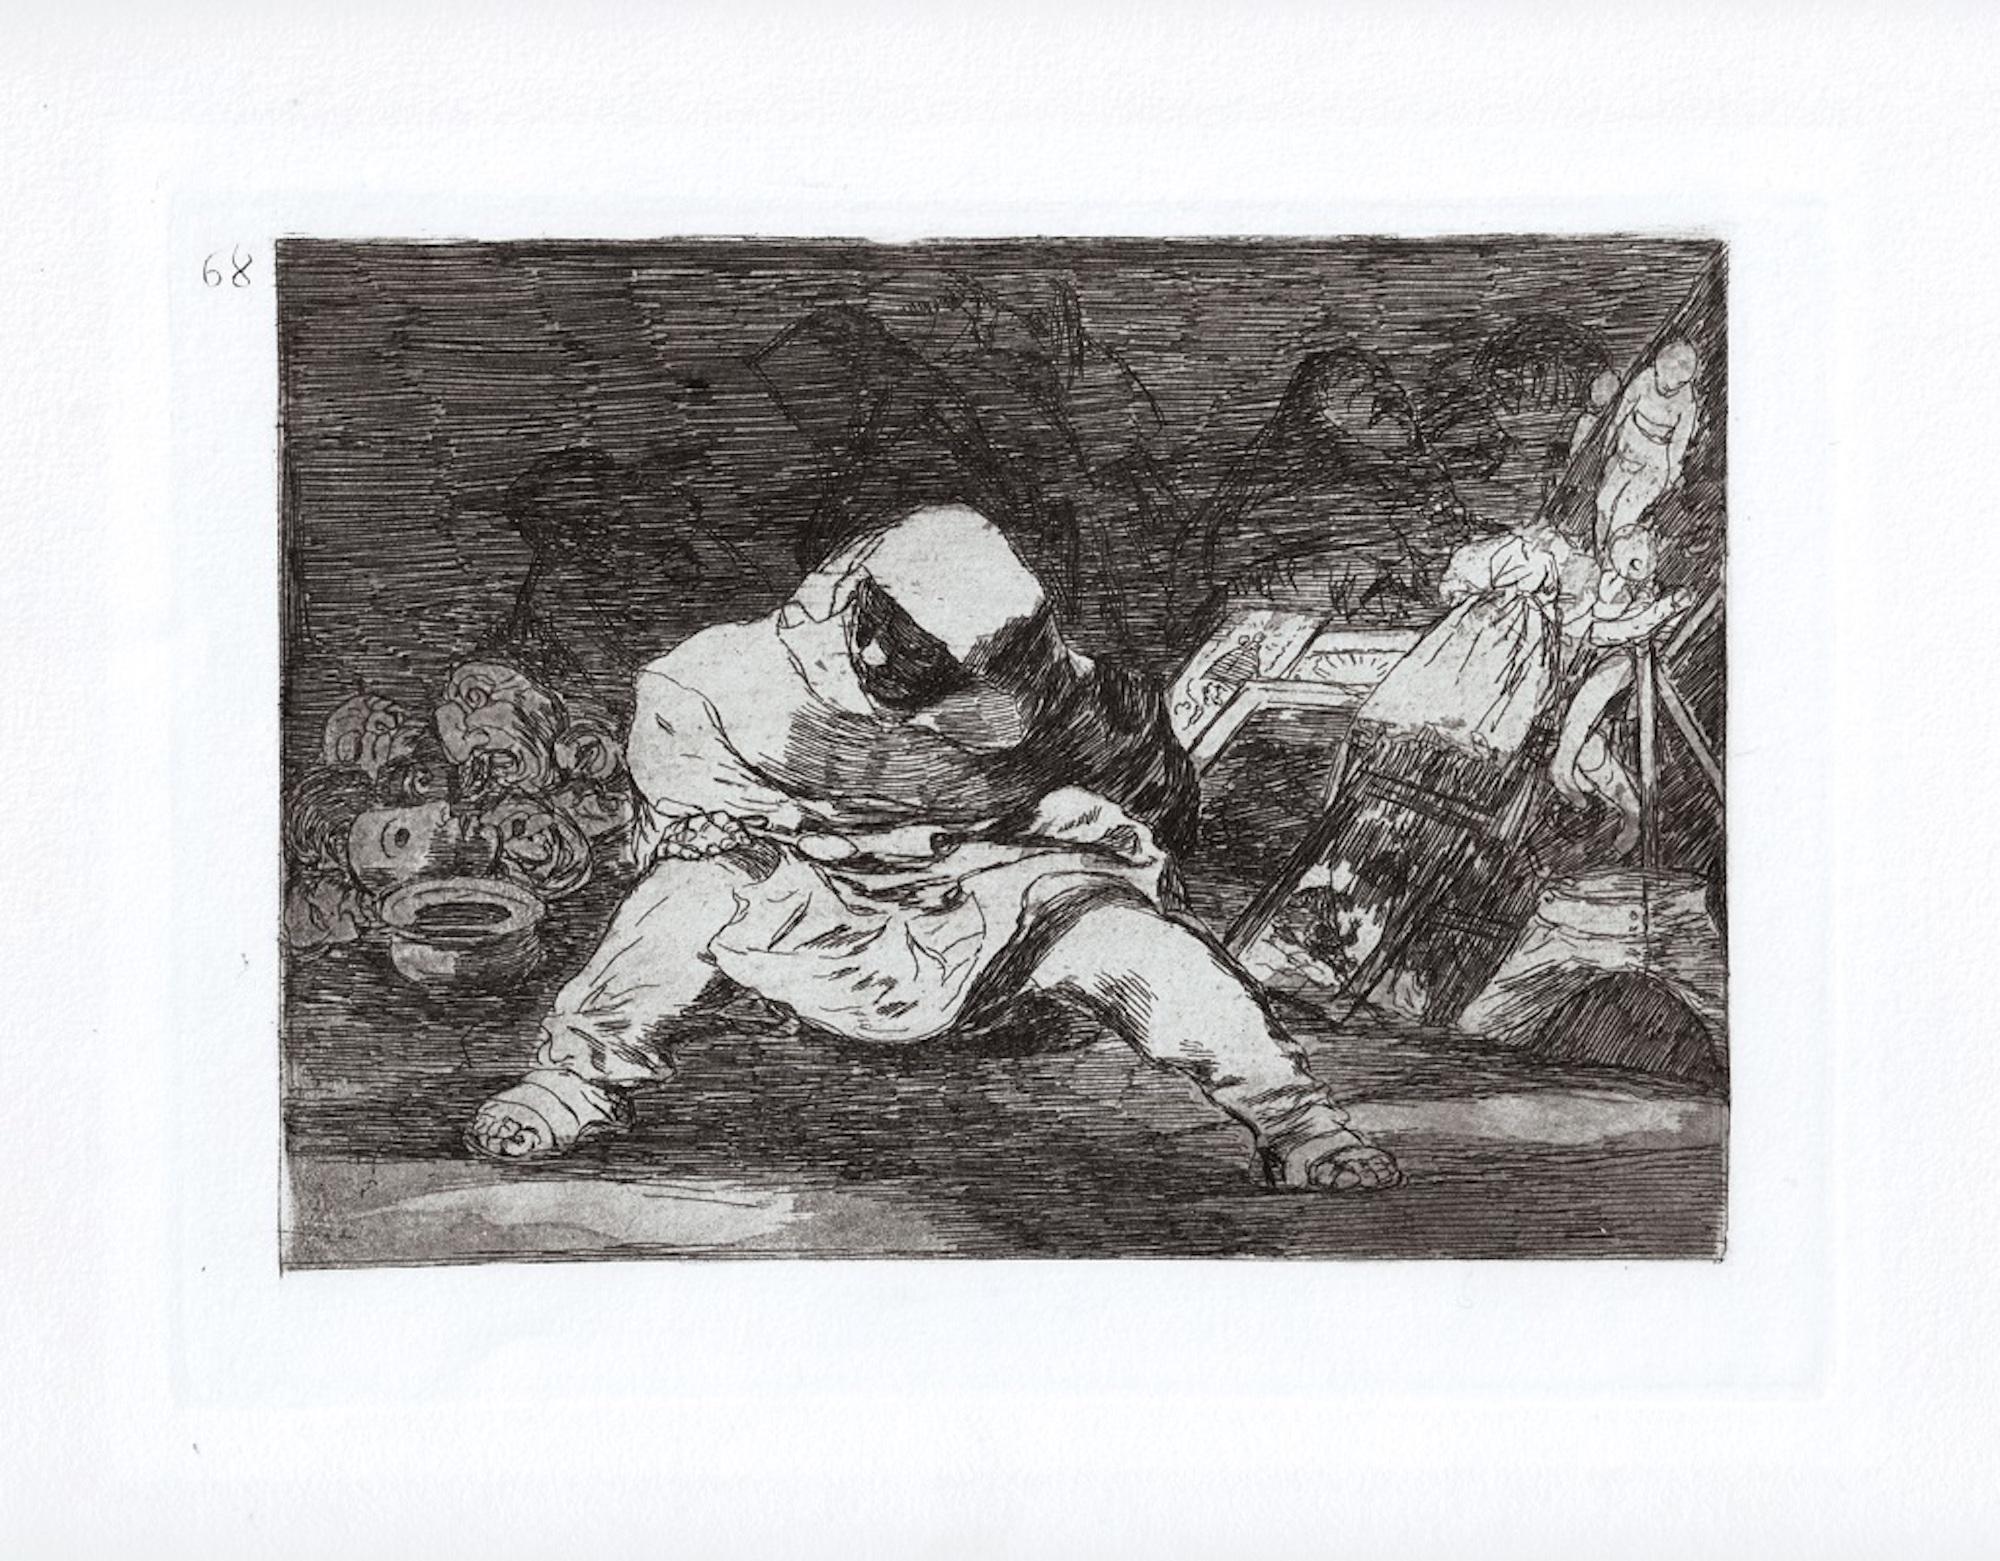 Que Locura ist ein Originalkunstwerk des großen spanischen Künstlers Francisco Goya aus dem Jahr 1810. 

Original-Radierung auf Papier. 

Das Werk gehört zu der berühmten Serie "Los Desastres de la Guerra", die in den Jahren des Spanischen